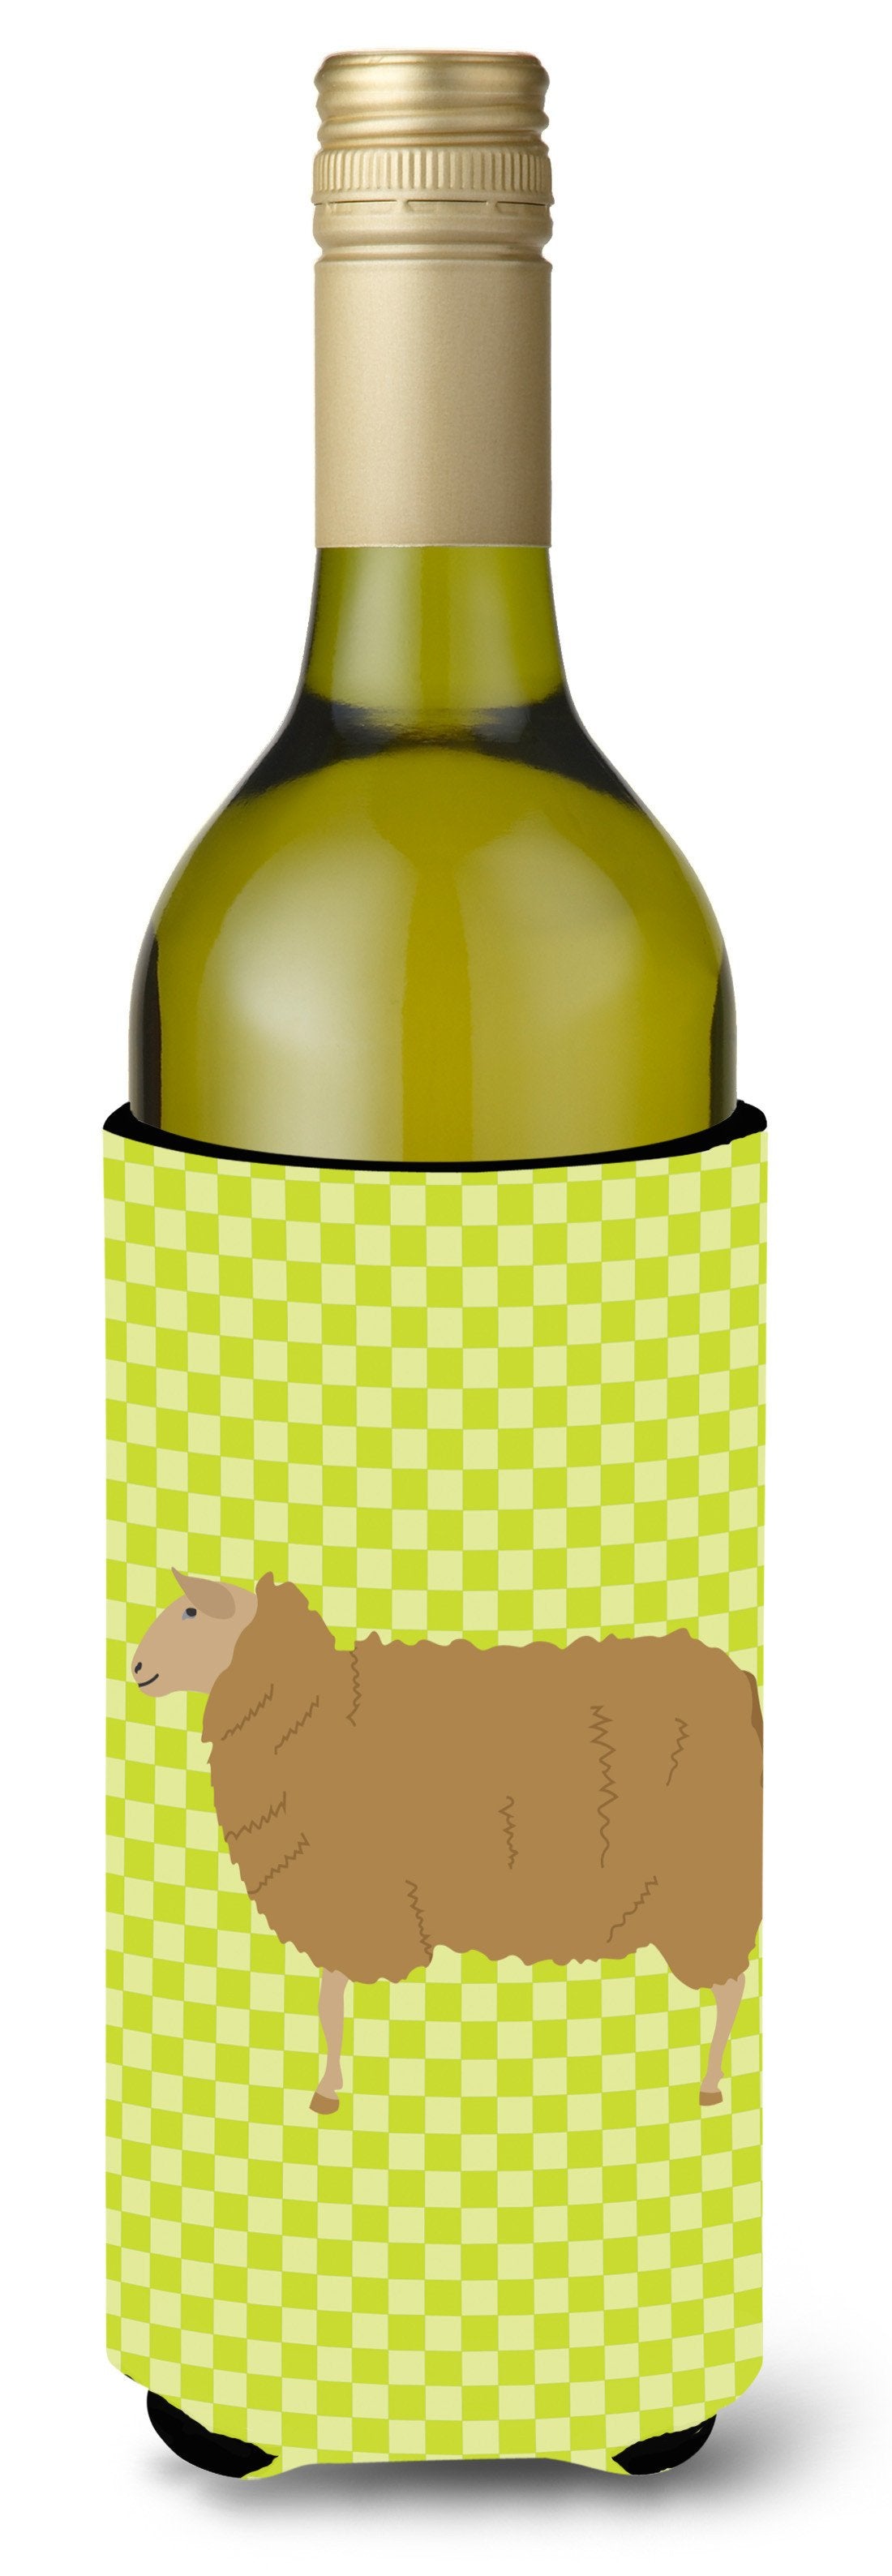 East Friesian Sheep Green Wine Bottle Beverge Insulator Hugger BB7803LITERK by Caroline's Treasures